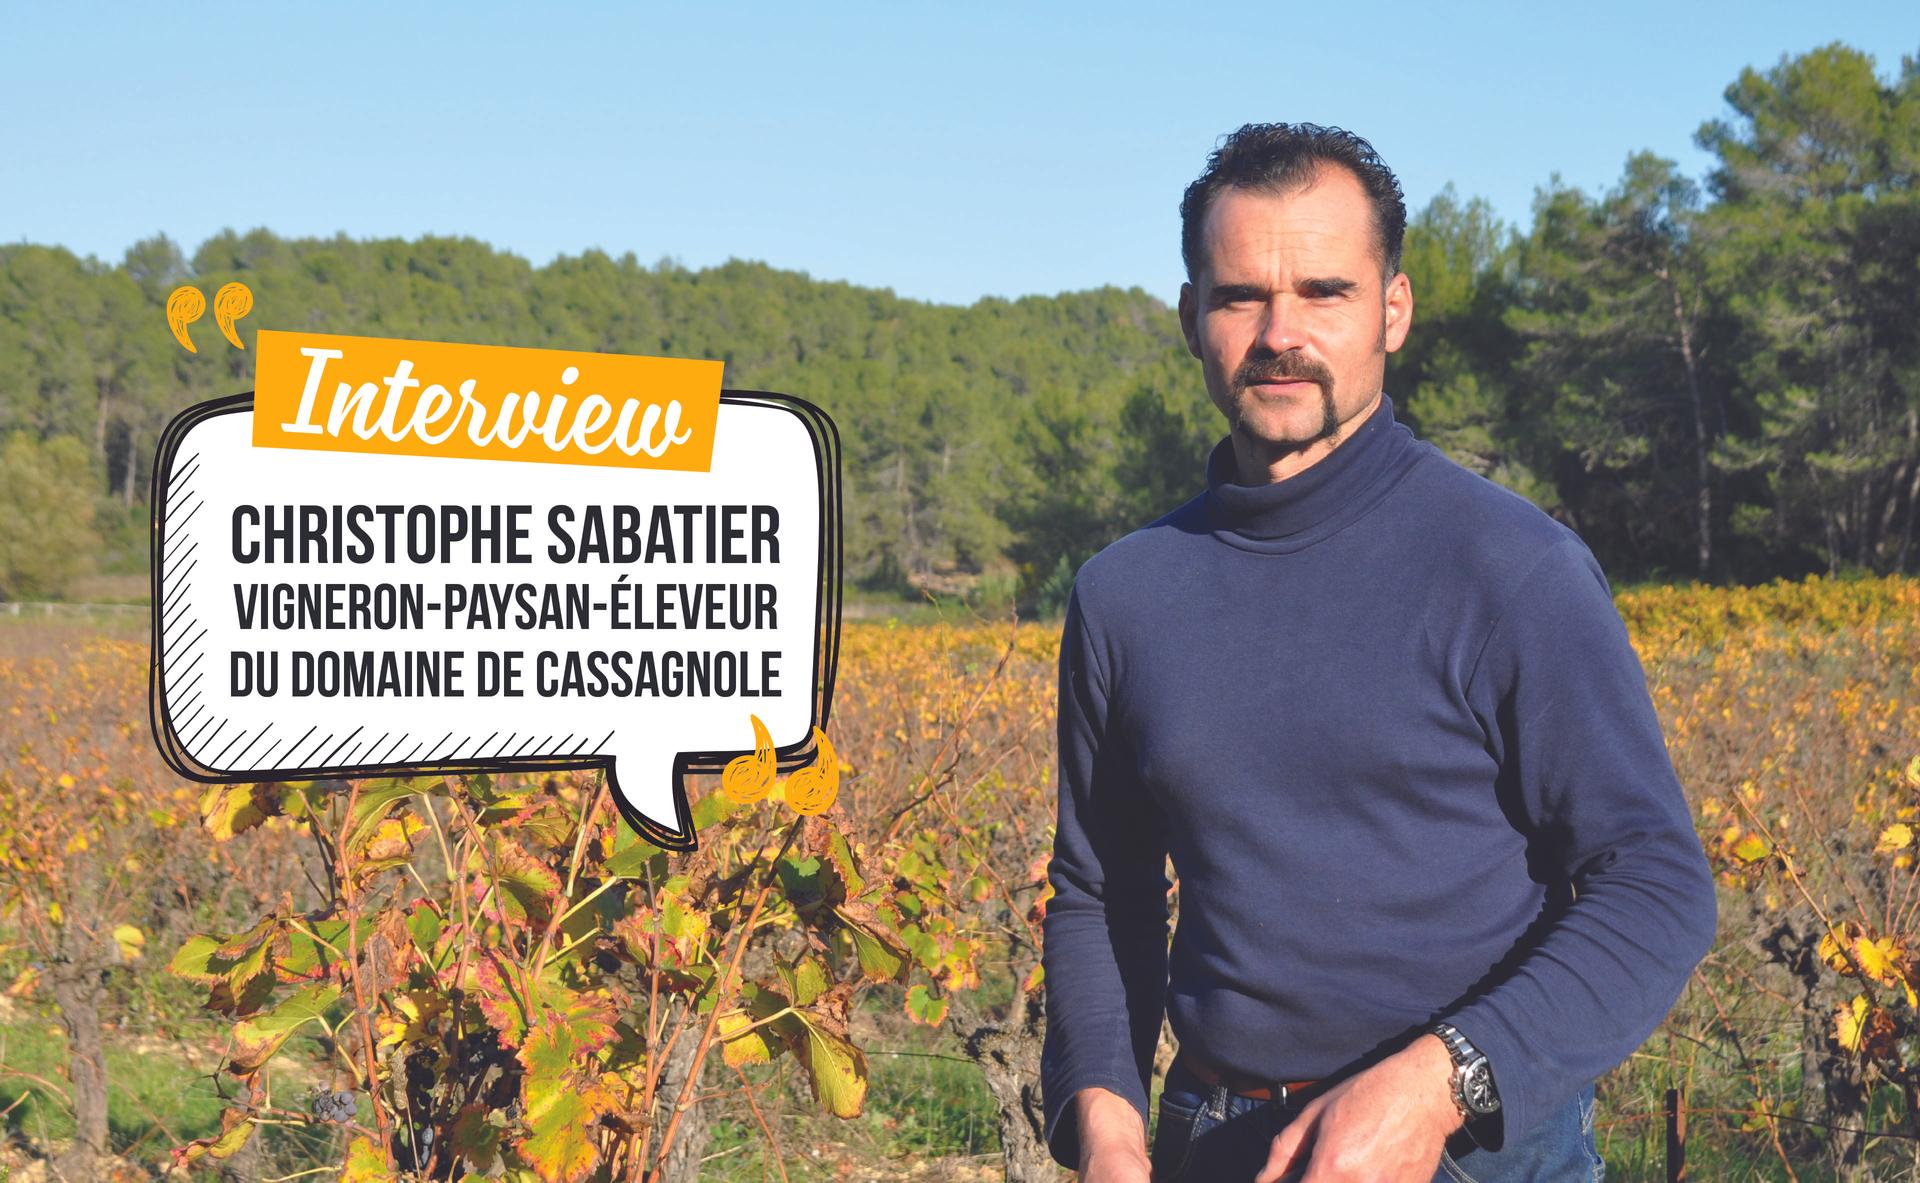 Christophe Sabatier, portrait d’un vigneron-paysan atypique